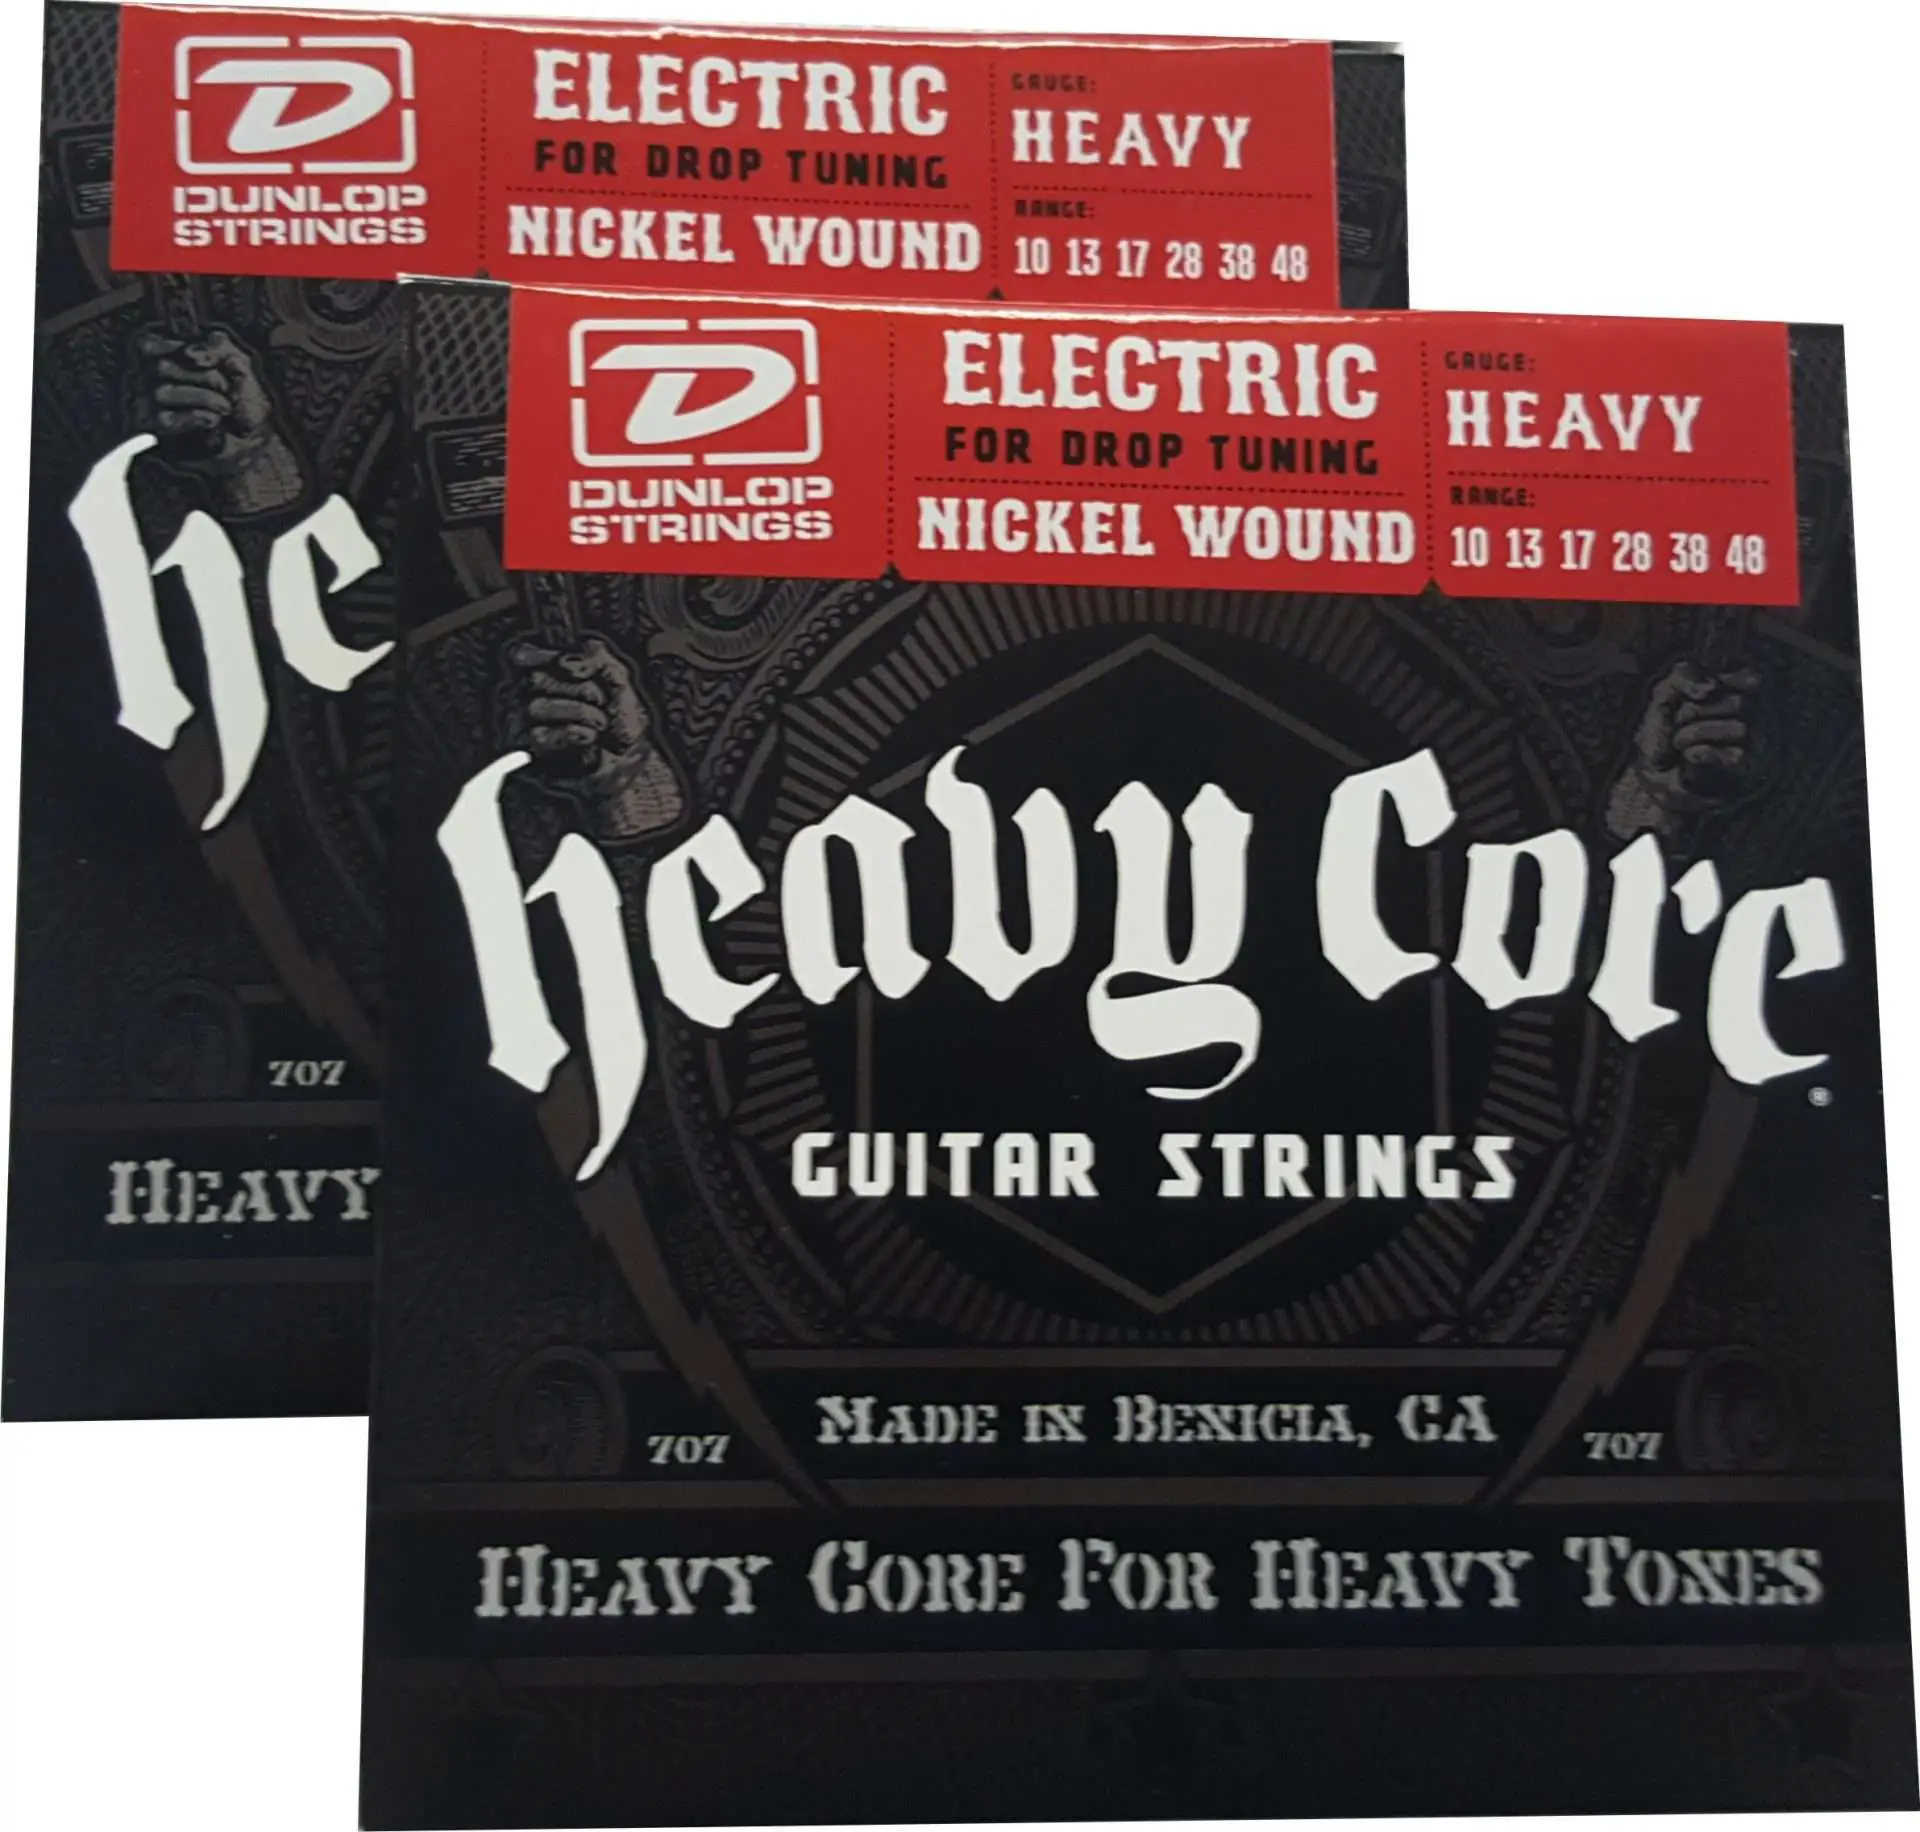 Dunlop Heavy Core Strings